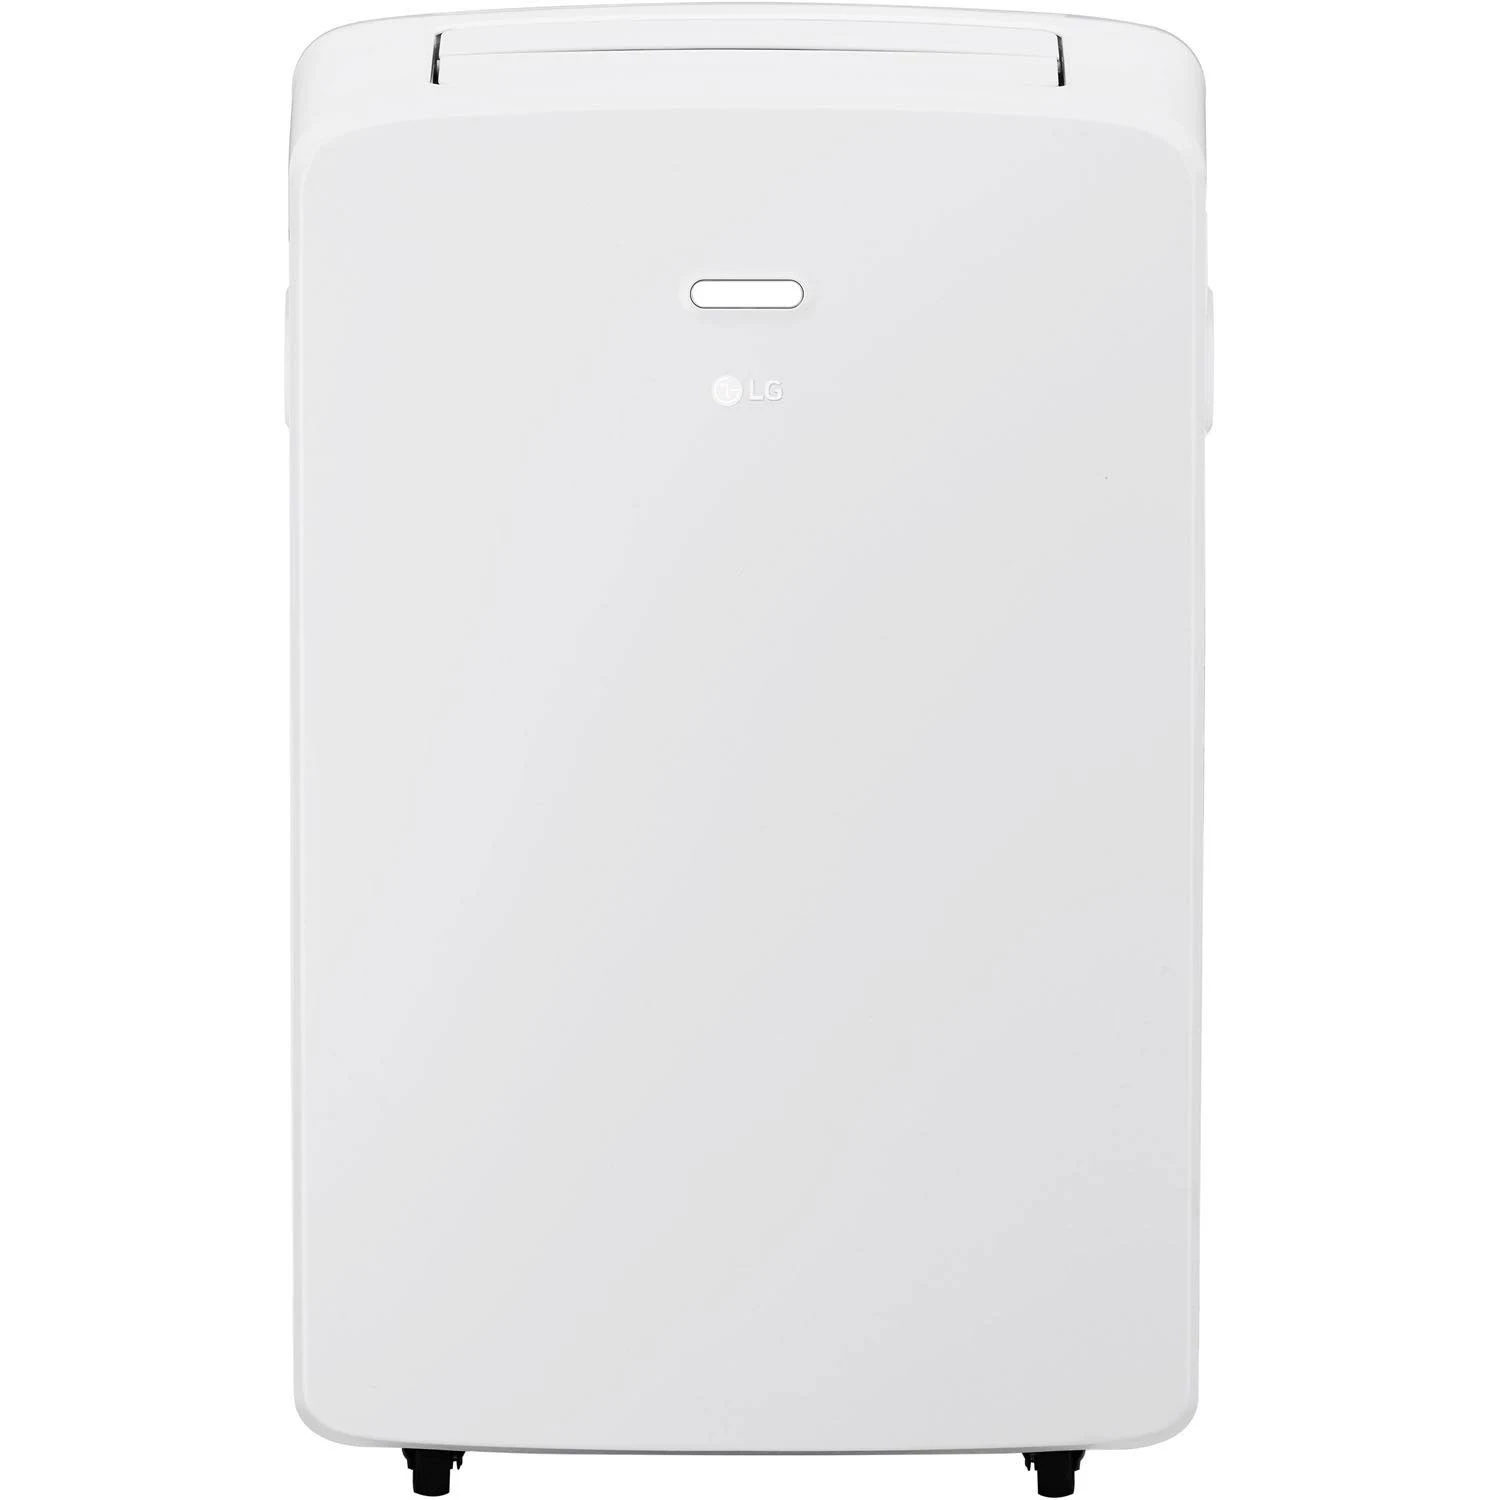 LG Electronics LG LP1017WSR 115V Tragbare Klimaanlage mit Fernbedienung in Weiß für Räume bis 250 Quadratmeter. Ft. (Zertifiziert überholt)